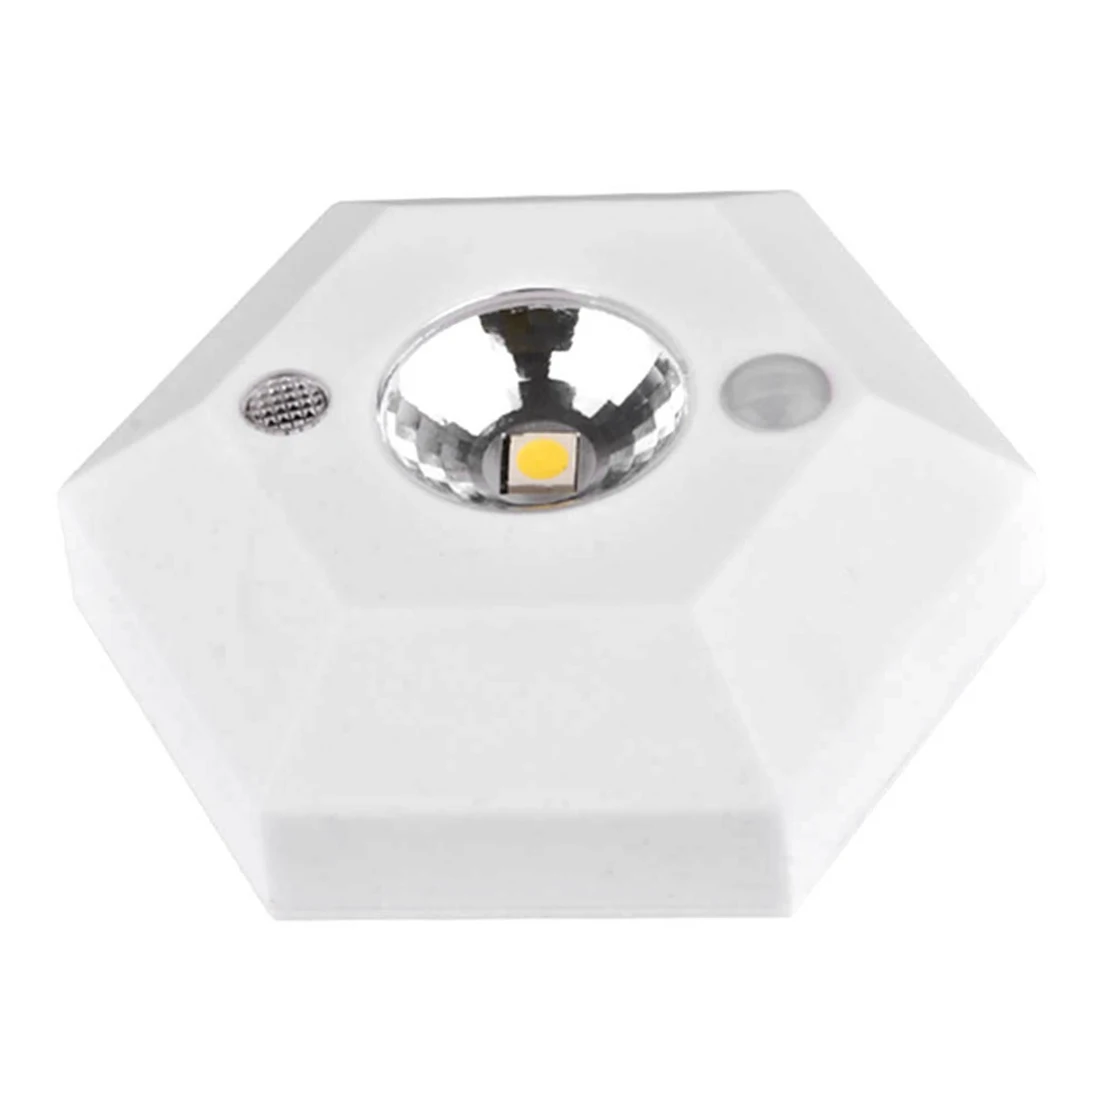 4,5 V высокой яркости светодиодный шестигранник для тела индукционные лампы 1 шт. движения Сенсор светильник для гардероба, коридора дверной замок лампа для выдвижного ящика - Испускаемый цвет: White